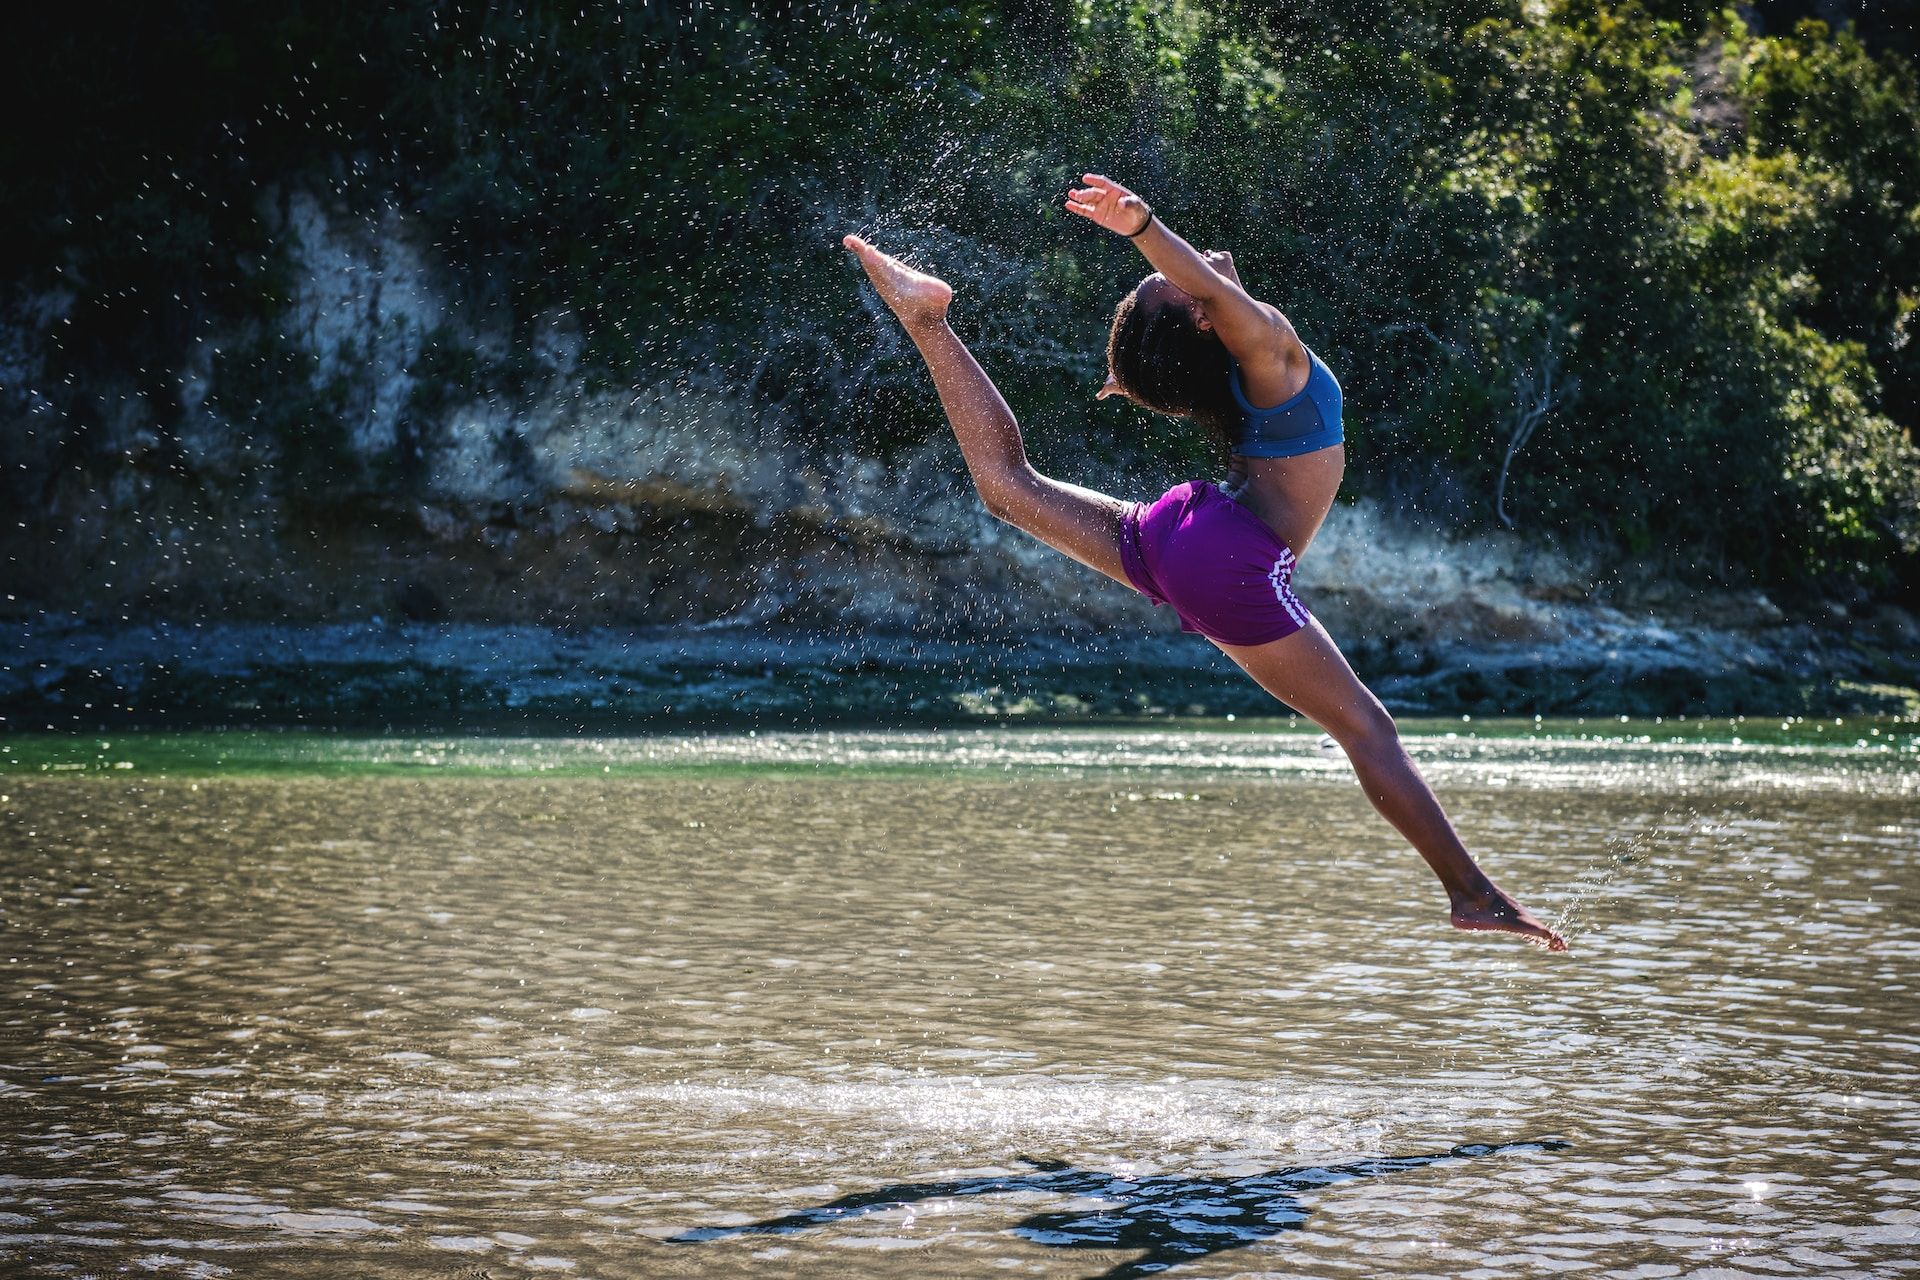 Femme sautant en l'ai en extension dans une rivière - Photo de Tim Mossholder sur Unsplash Photo de Tim Mossholder sur https://unsplash.com/fr/photos/nO6NxJvBzow